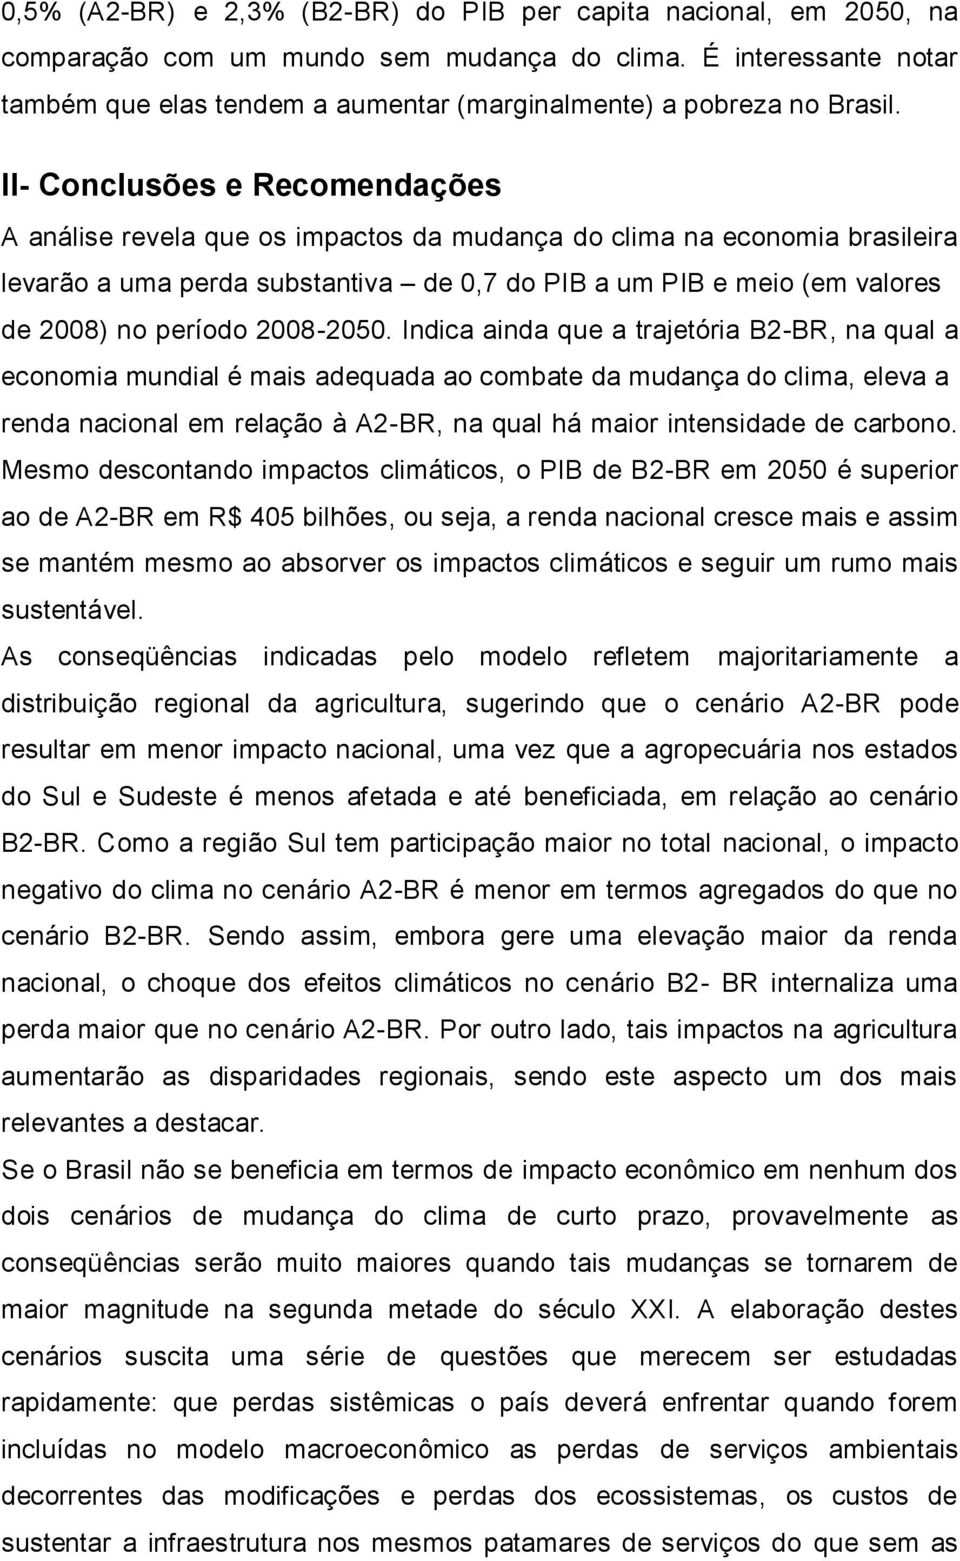 II- Conclusões e Recomendações A análise revela que os impactos da mudança do clima na economia brasileira levarão a uma perda substantiva de 0,7 do PIB a um PIB e meio (em valores de 2008) no